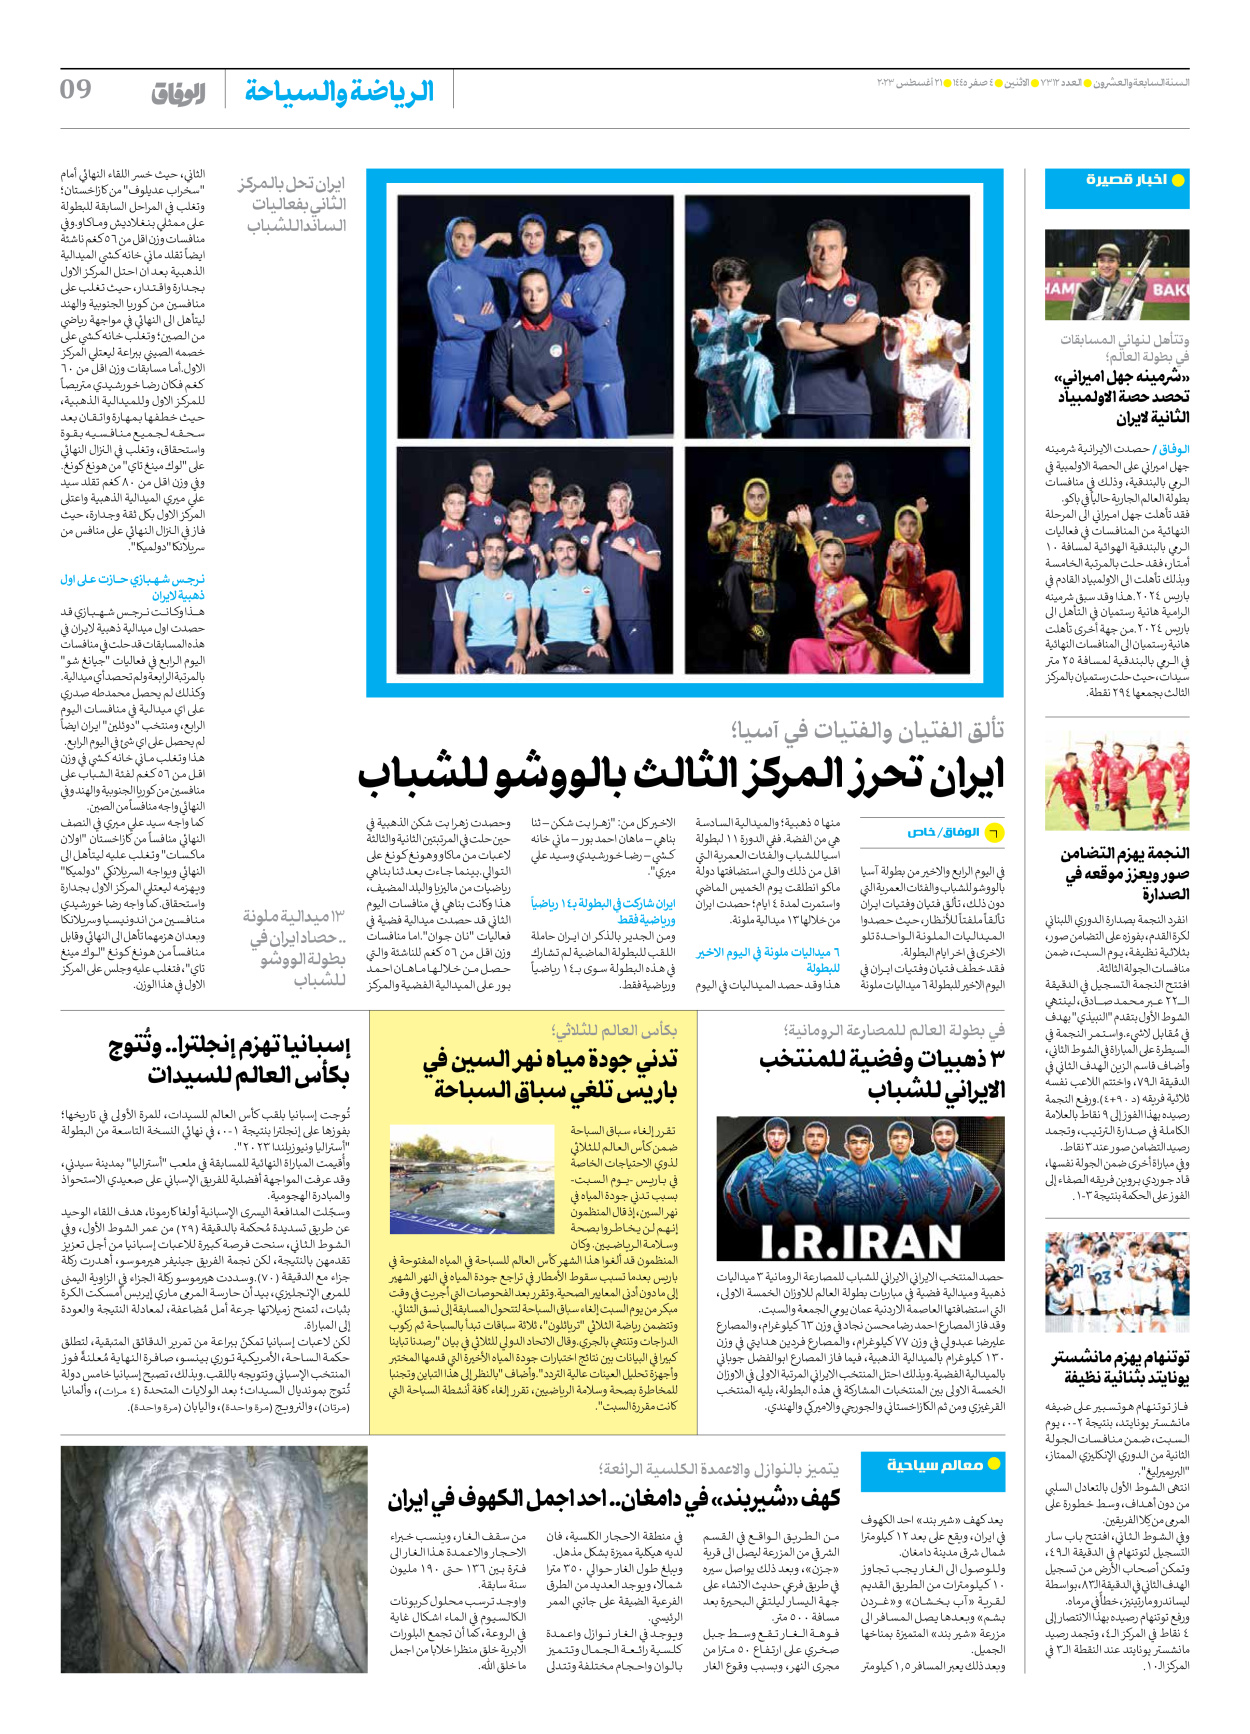 صحیفة ایران الدولیة الوفاق - العدد سبعة آلاف وثلاثمائة واثنا عشر - ٢١ أغسطس ٢٠٢٣ - الصفحة ۹